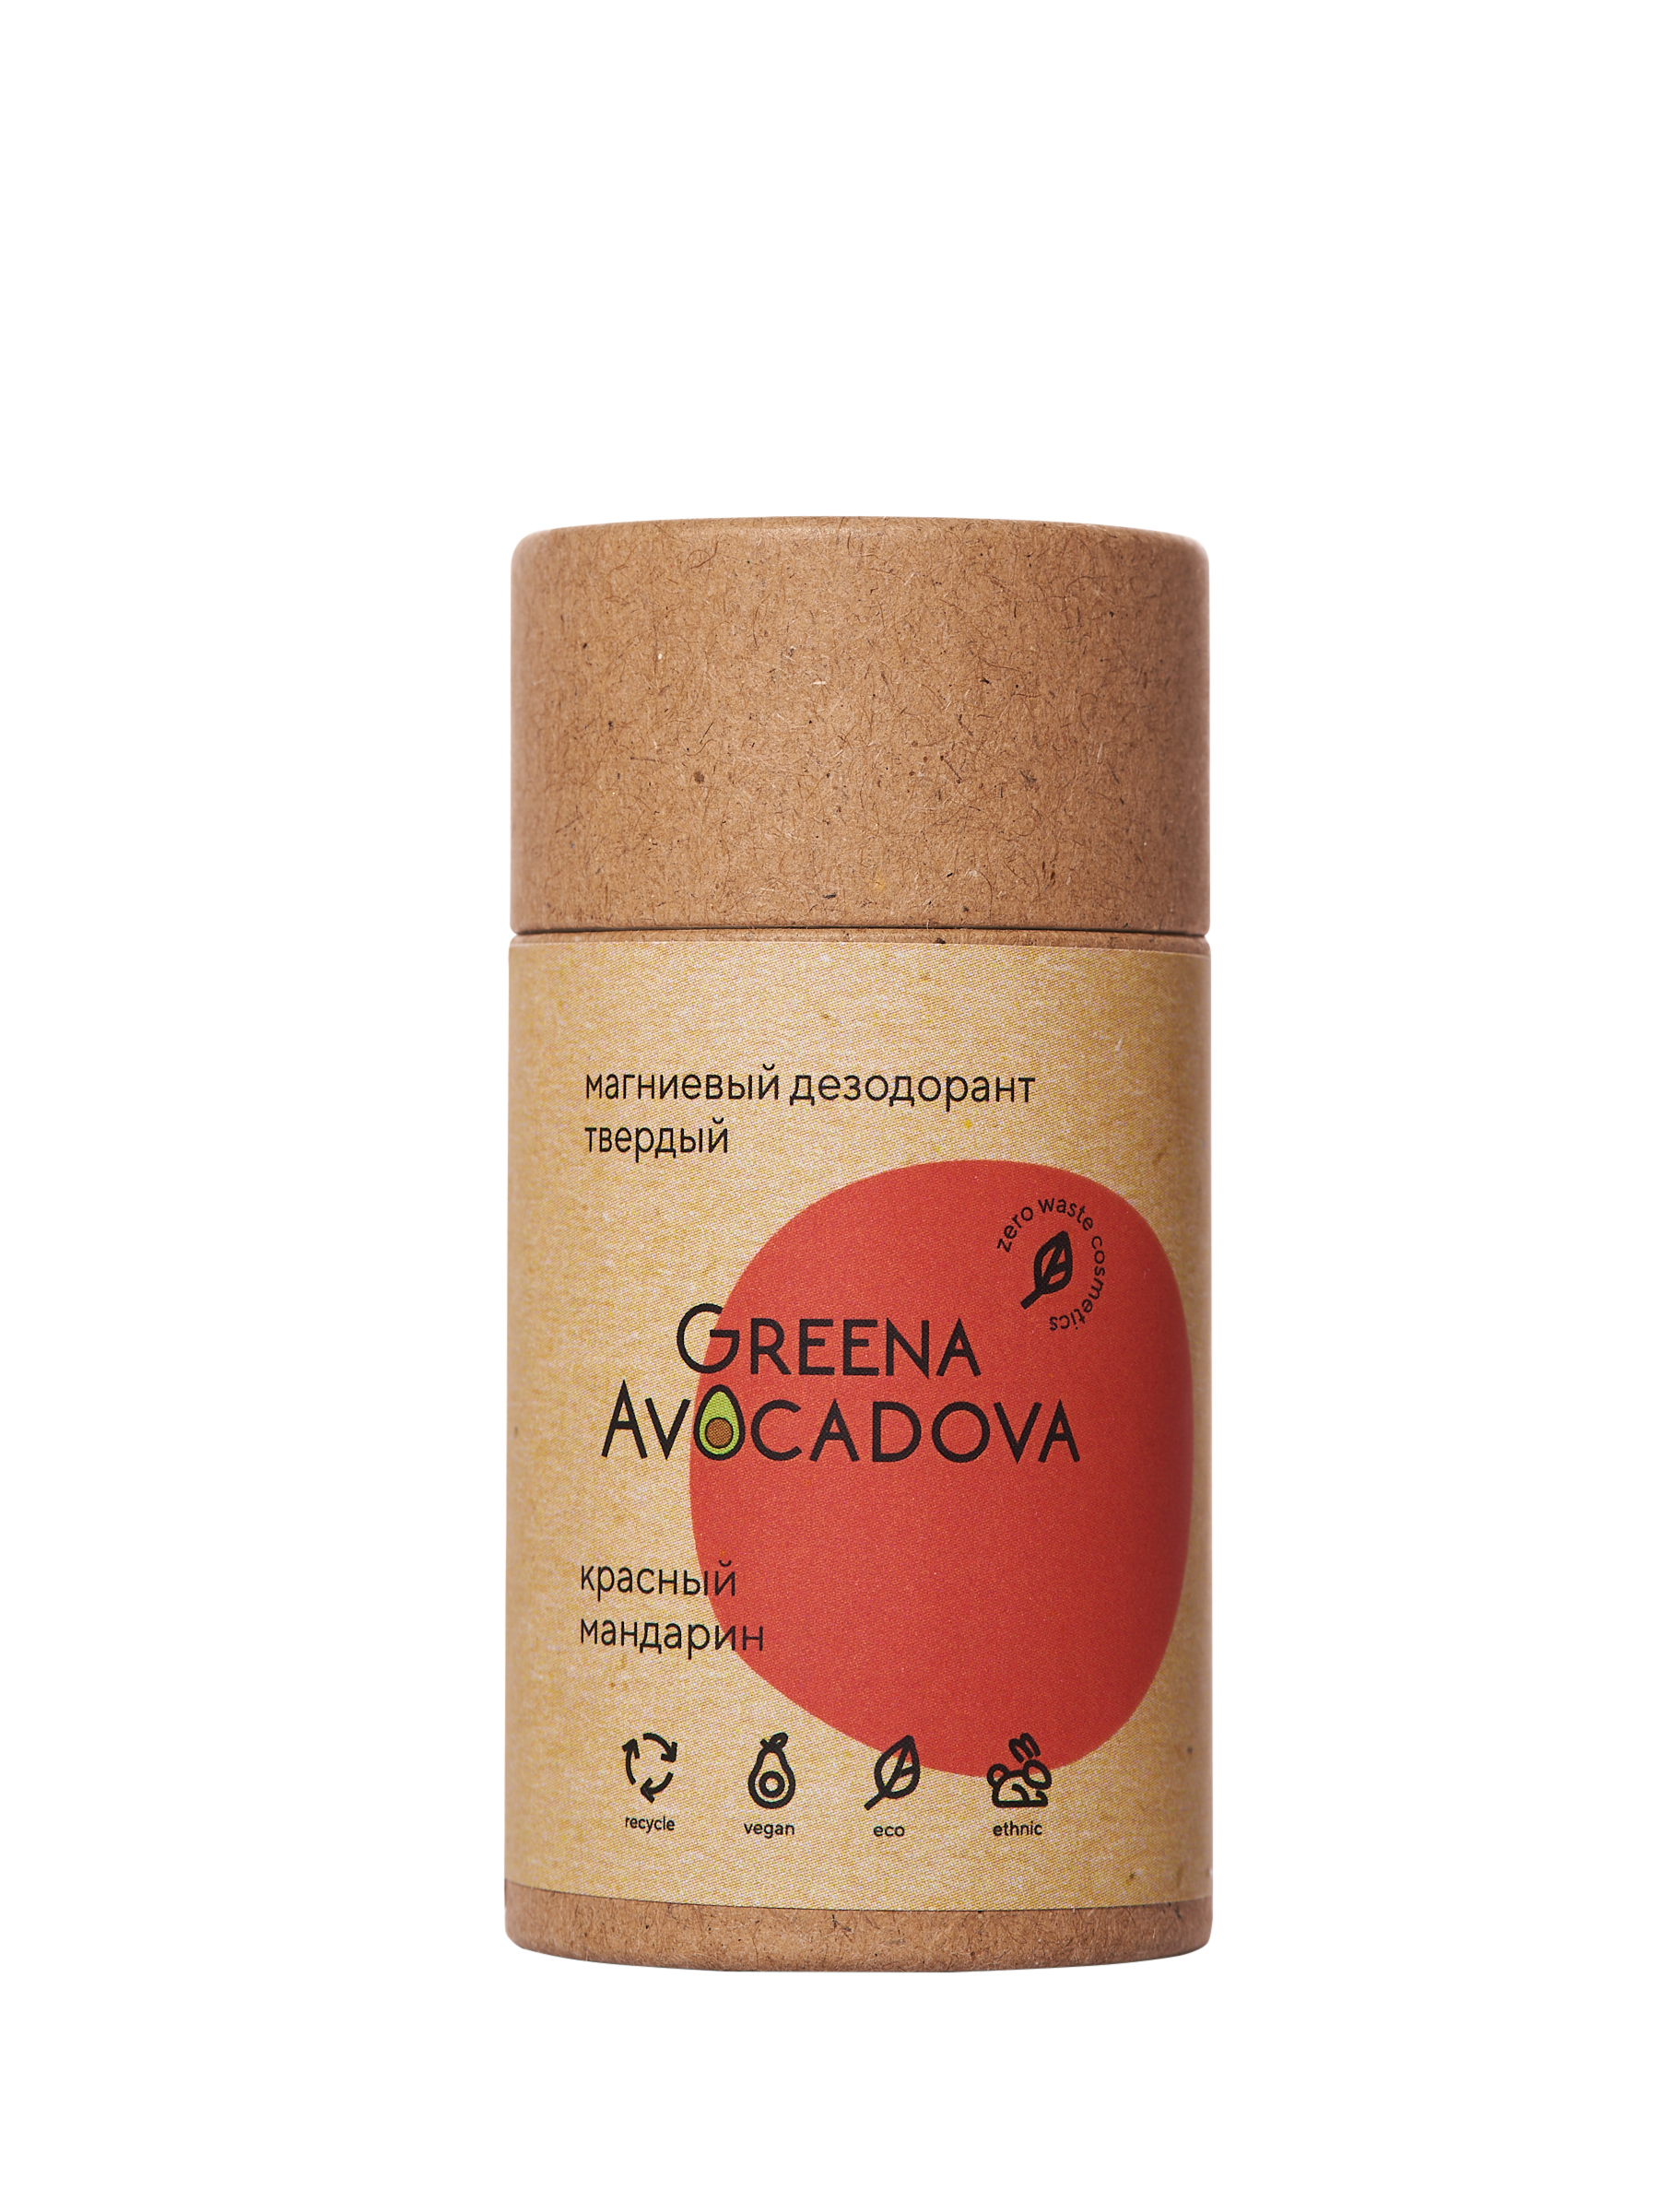 Натуральный твердый дезодорант Greena Avocadova Красный мандарин - фото 1